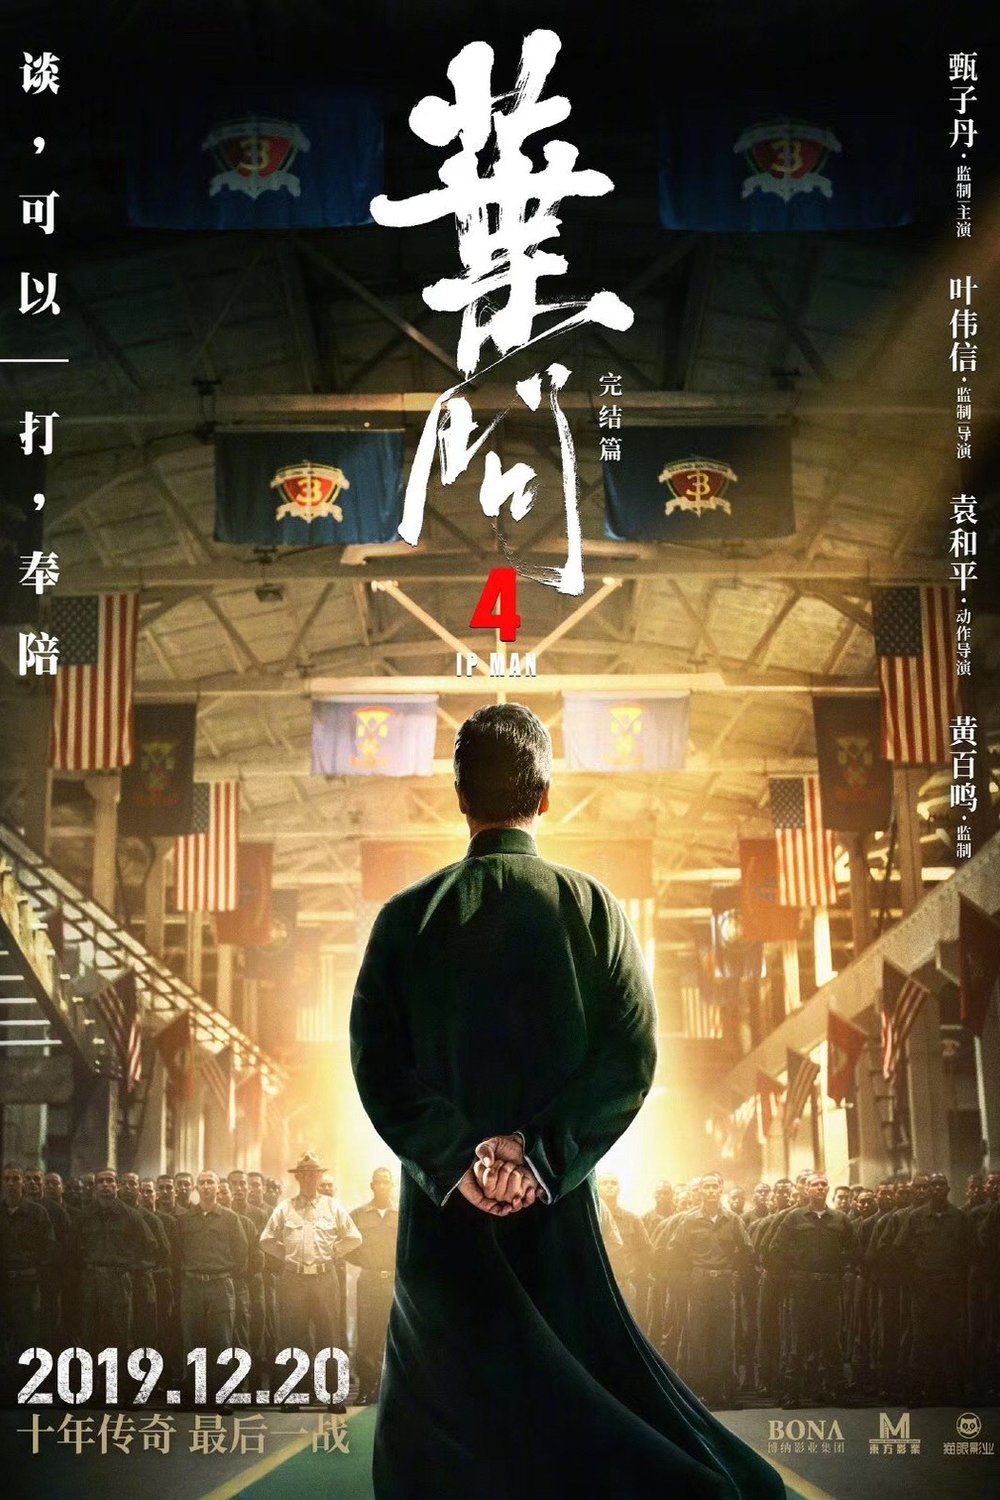 L'affiche originale du film Yip Man 4 en Cantonais